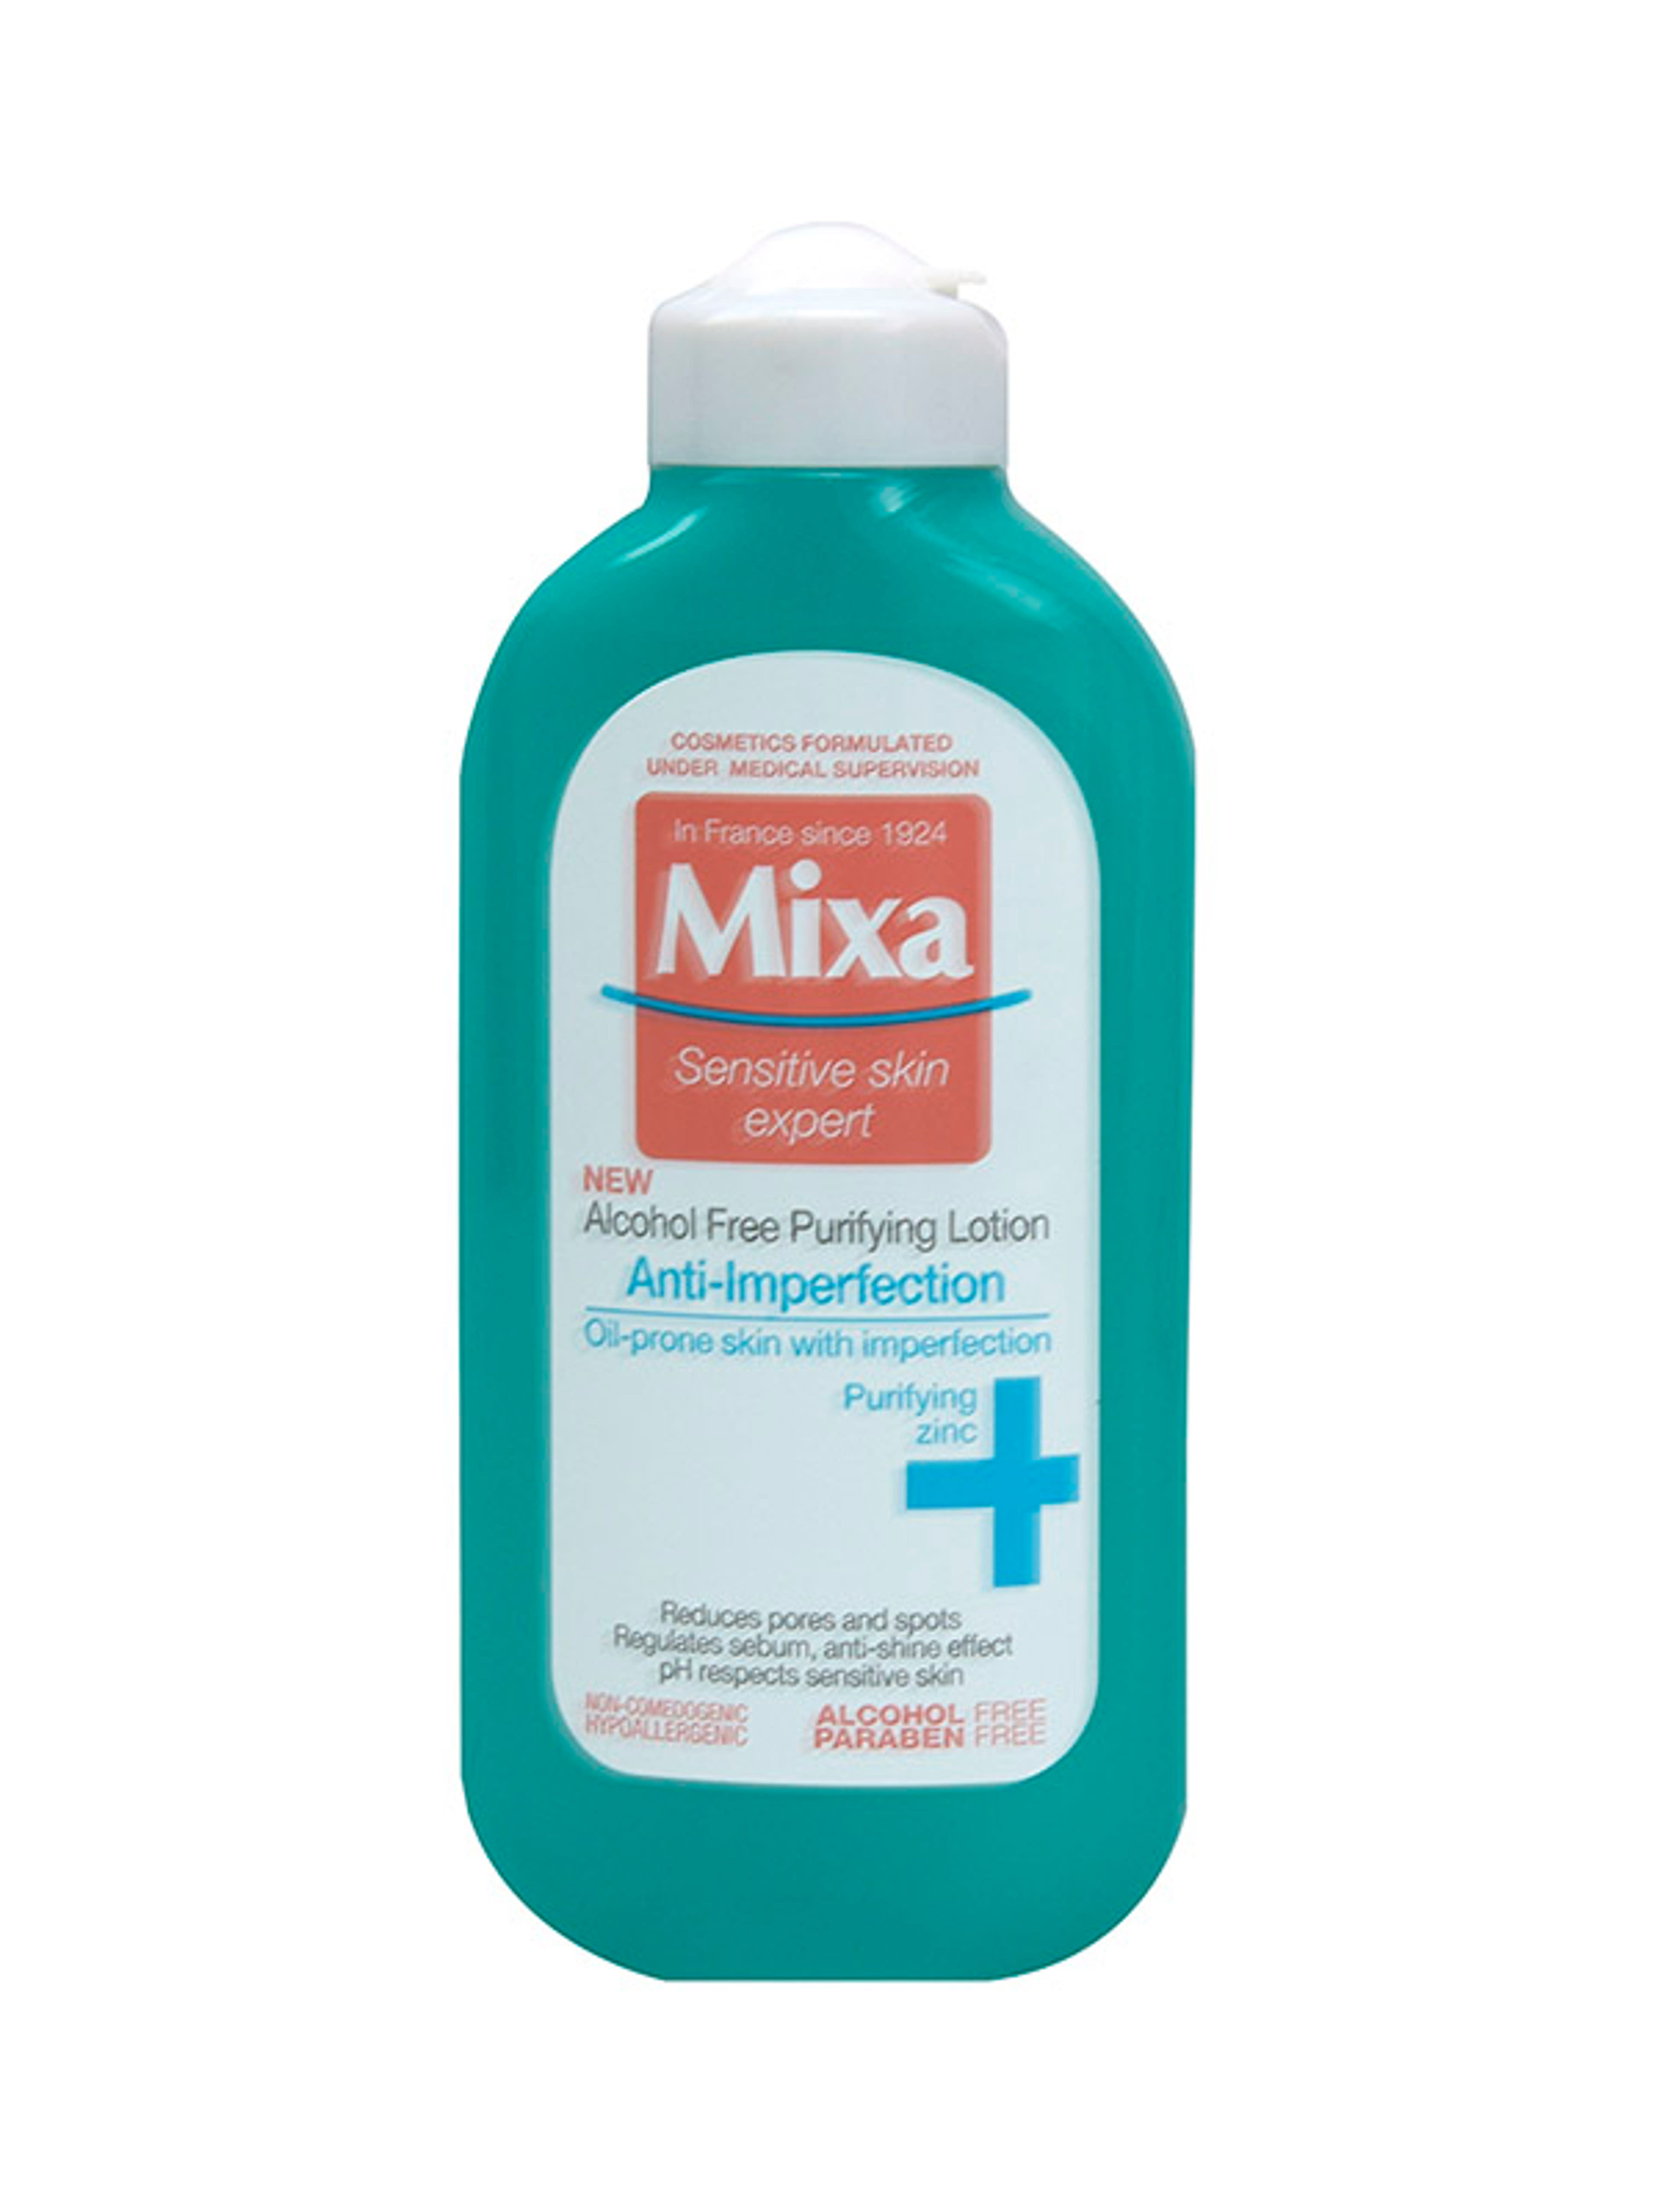 Mixa Anti-Imperfection alkoholmentes arctisztító tonik zsíros és bőrhibákra hajlamos érzékeny bőrre - 200 ml-1